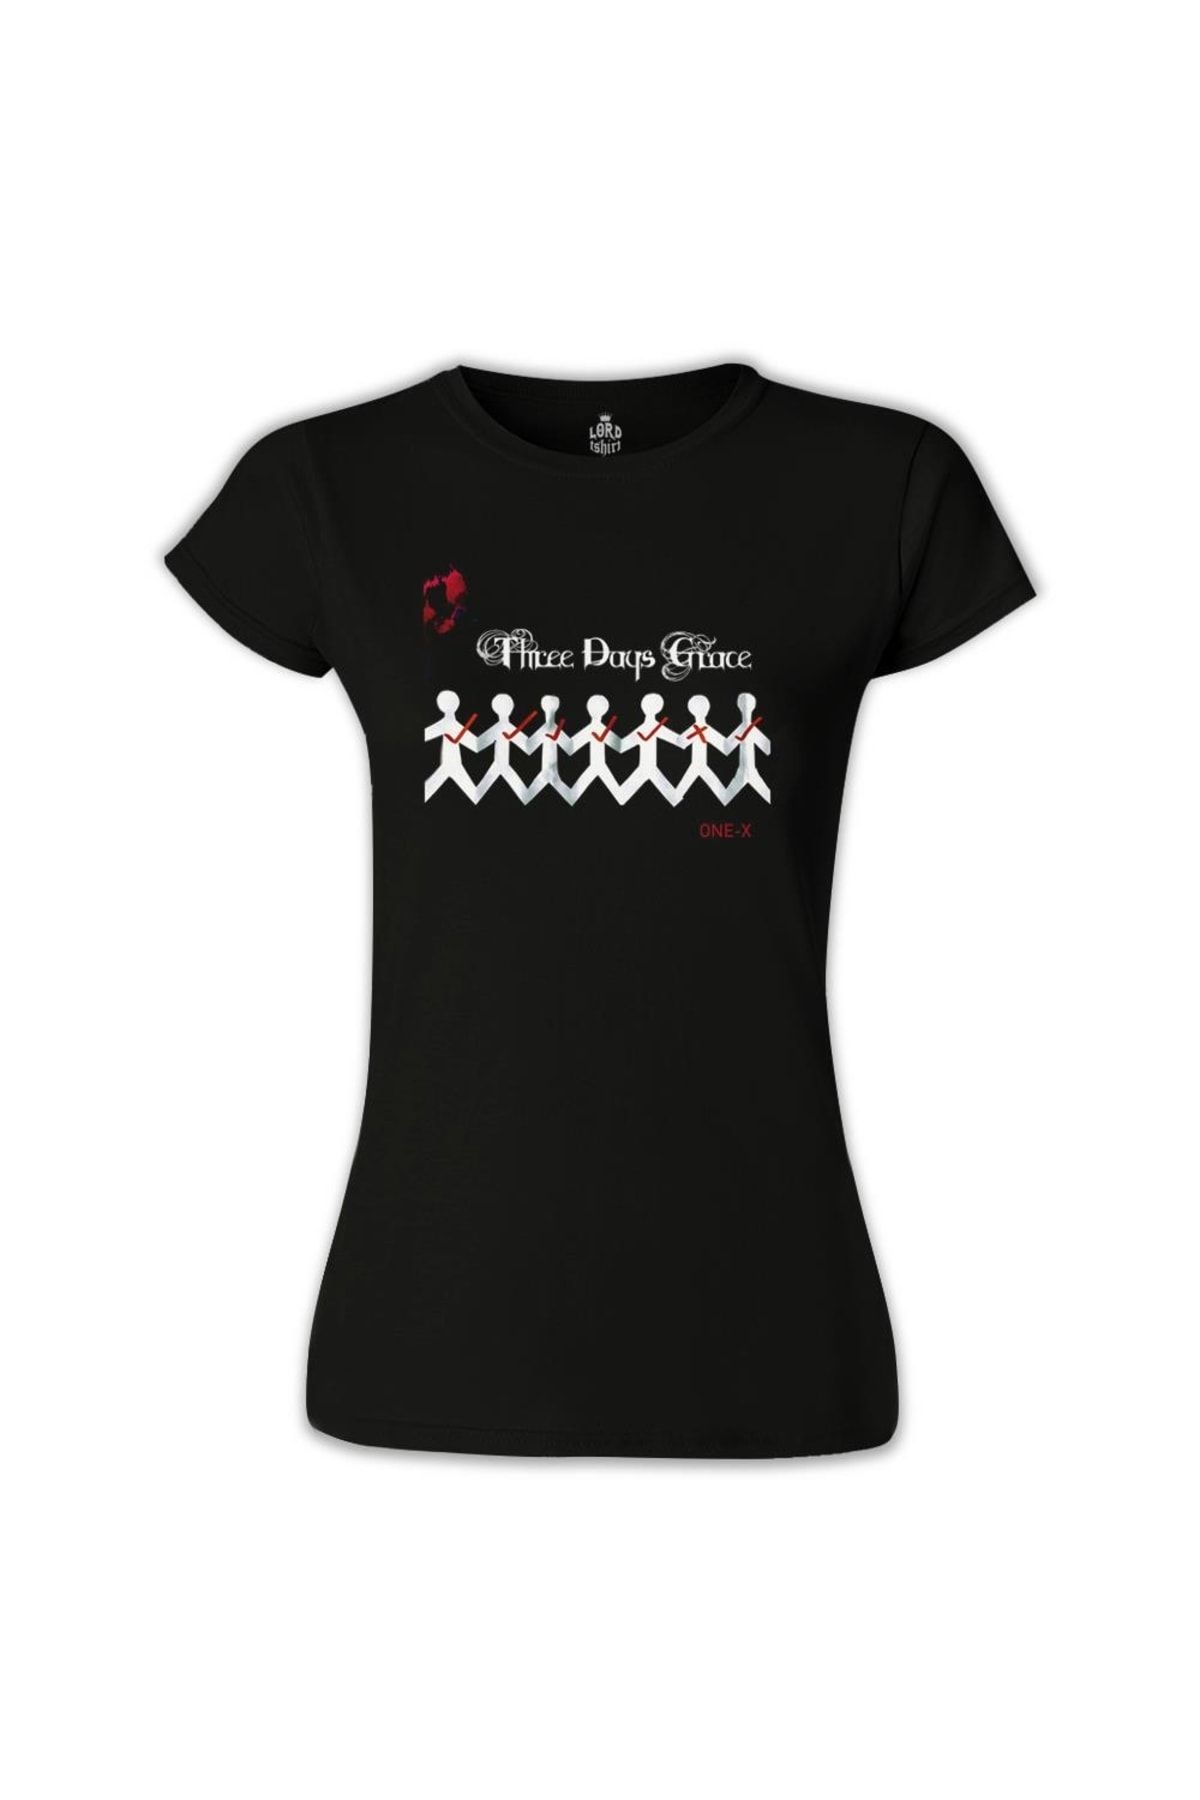 Lord T-Shirt Kadın Three Days Grace - One X Siyah  Tshirt